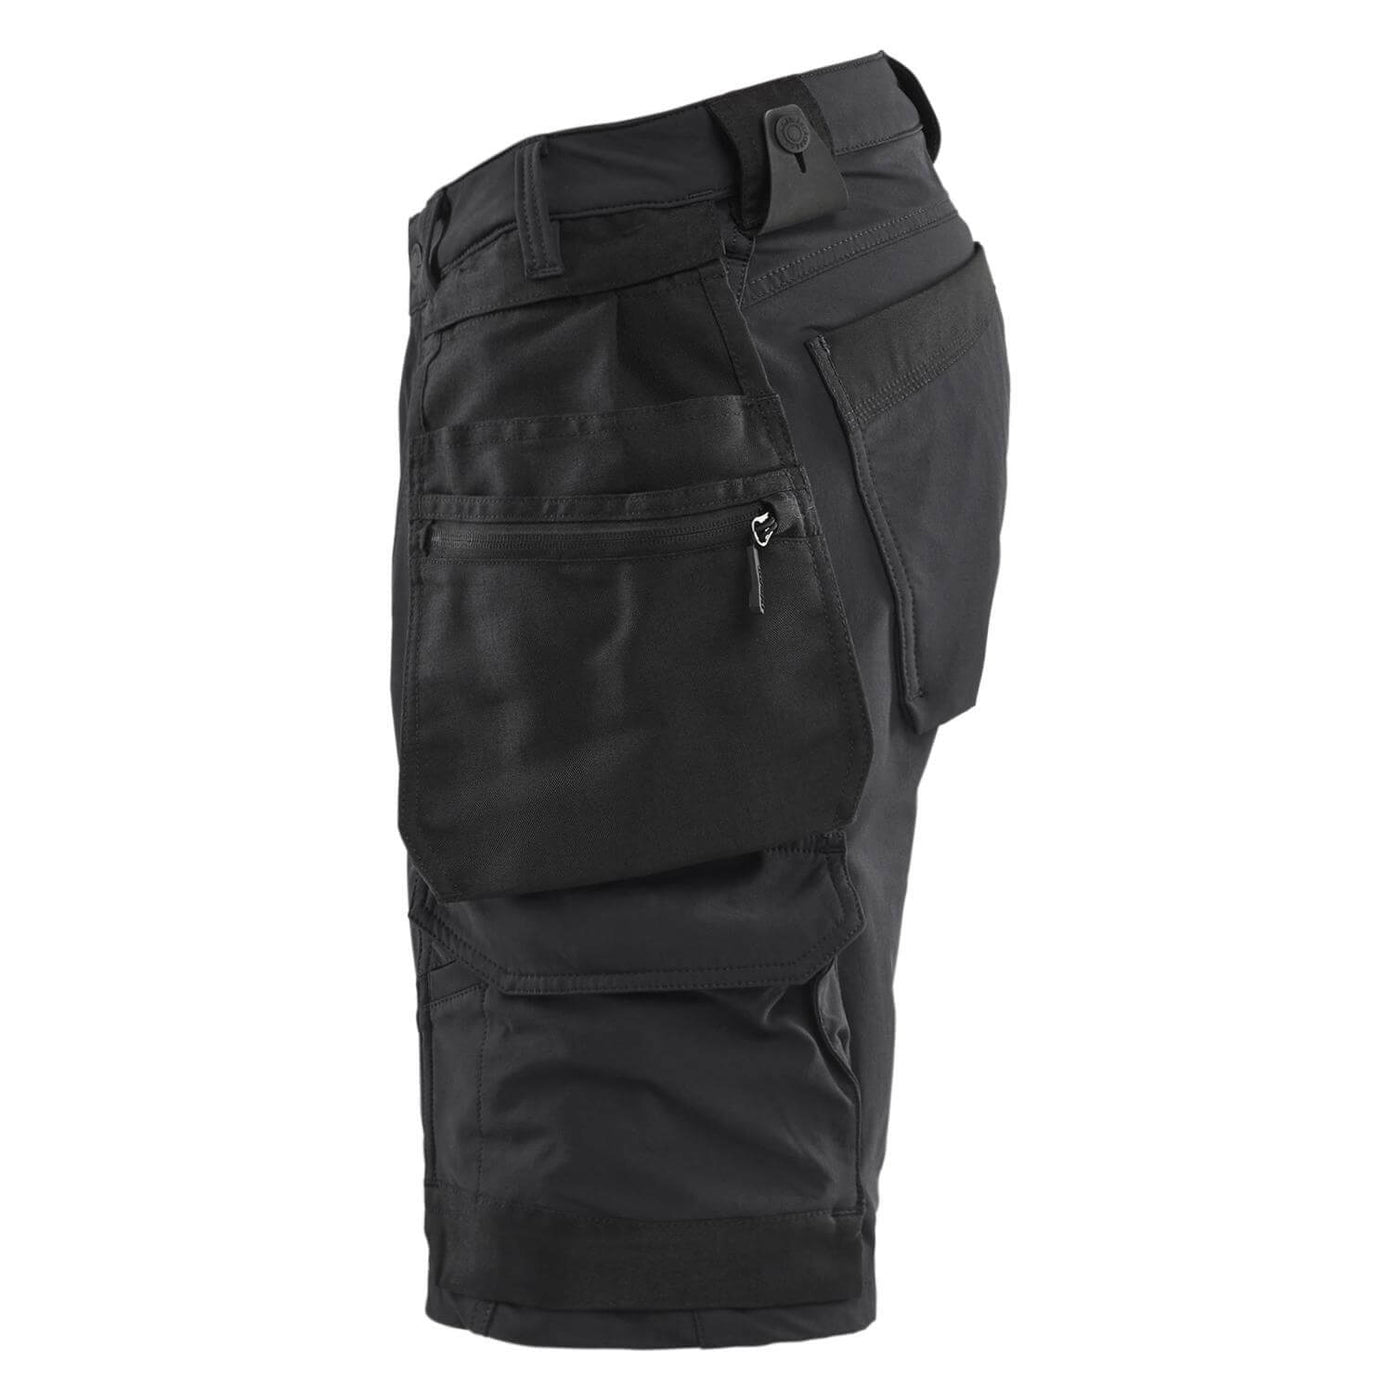 Blaklader 17021645 Craftsman Shorts 4-Way Stretch Black Left #colour_black